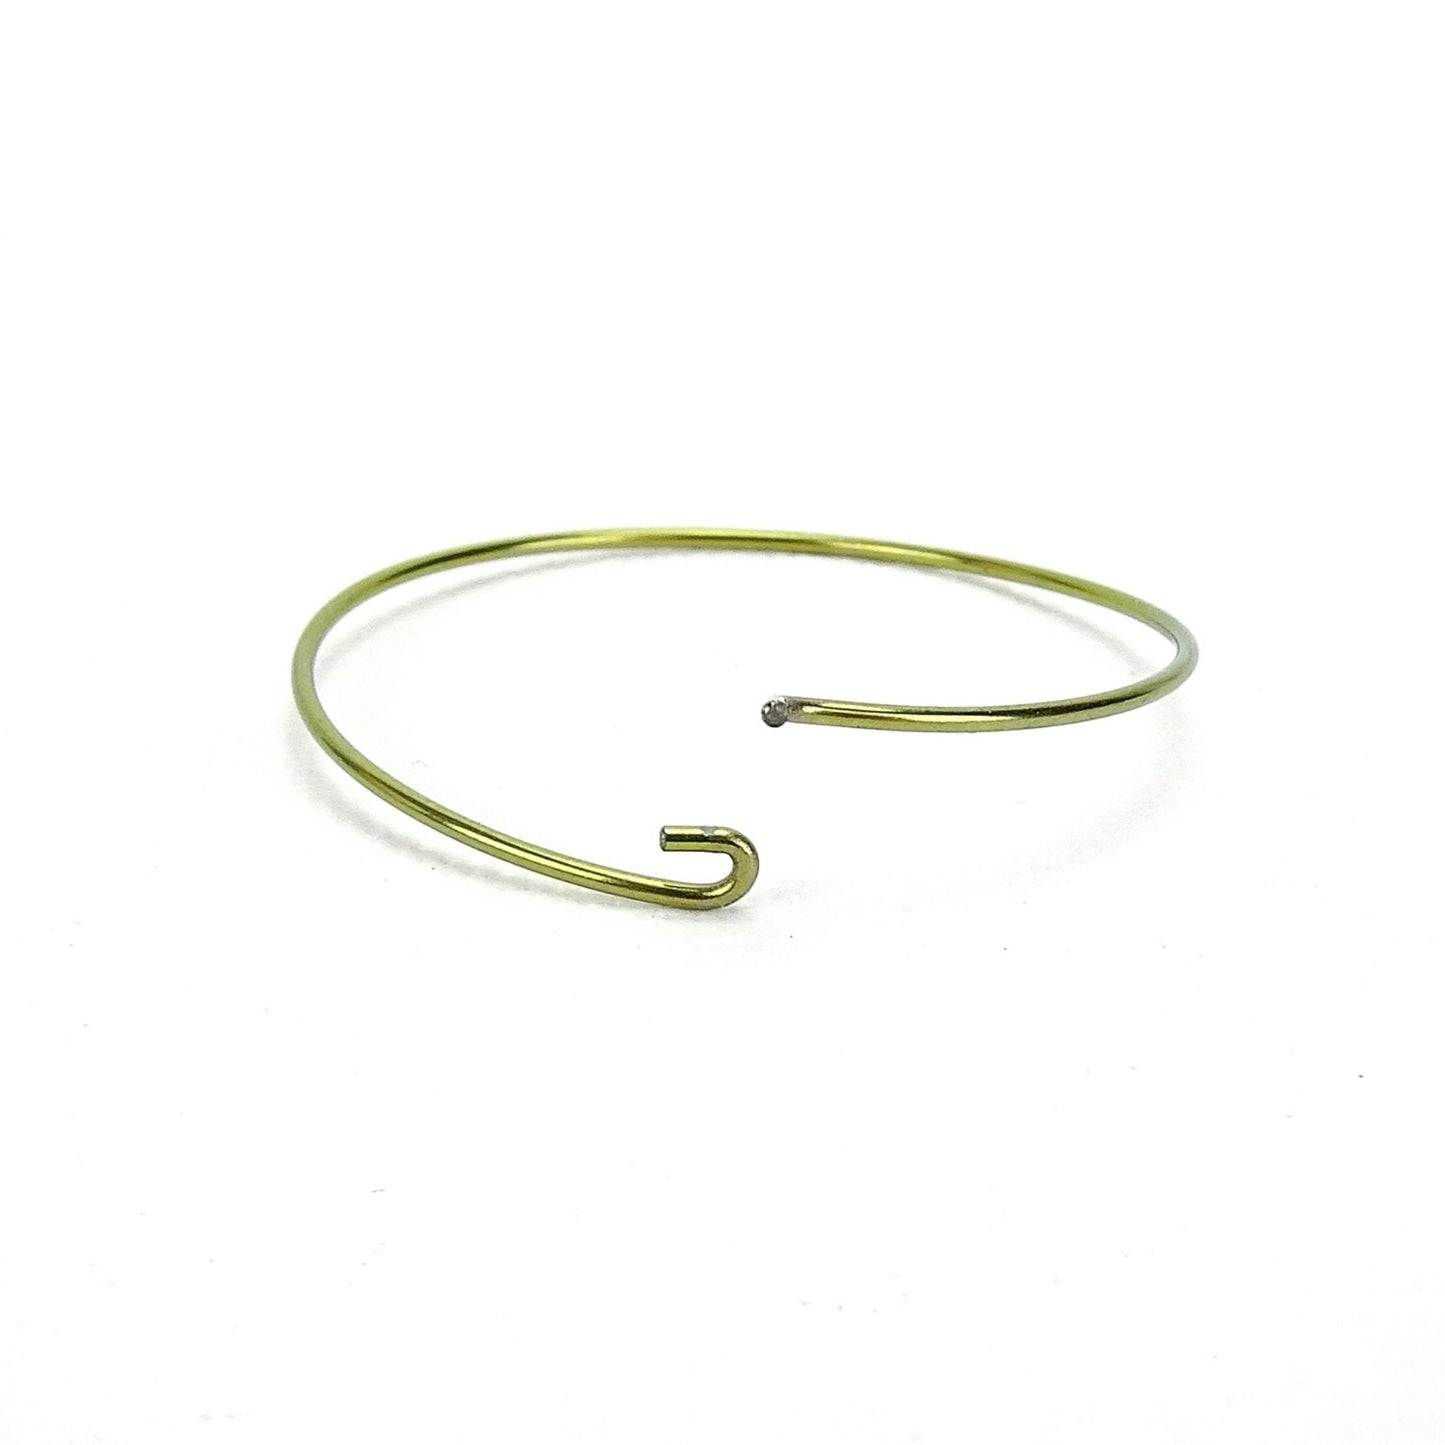 Niobium Hoop Earrings Gold Large, Yellow Gold Color Niobium Hoops for Sensitive Ears, Nickel Free Hypoallergenic Jewelry, Niobium Earrings